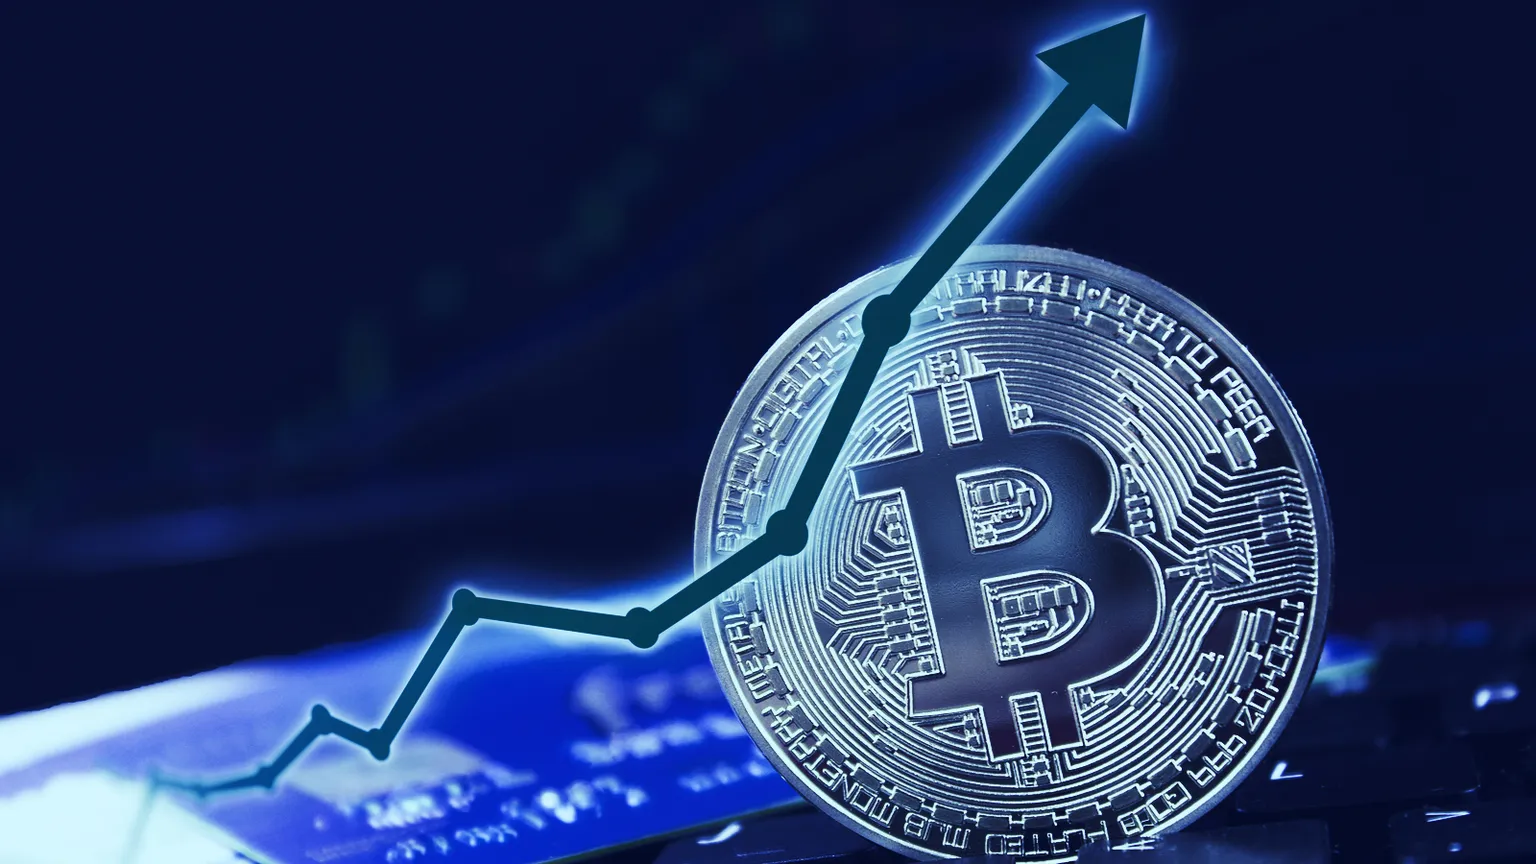 El precio de Bitcoin ha subido en los últimos días. Imagen: Shutterstock